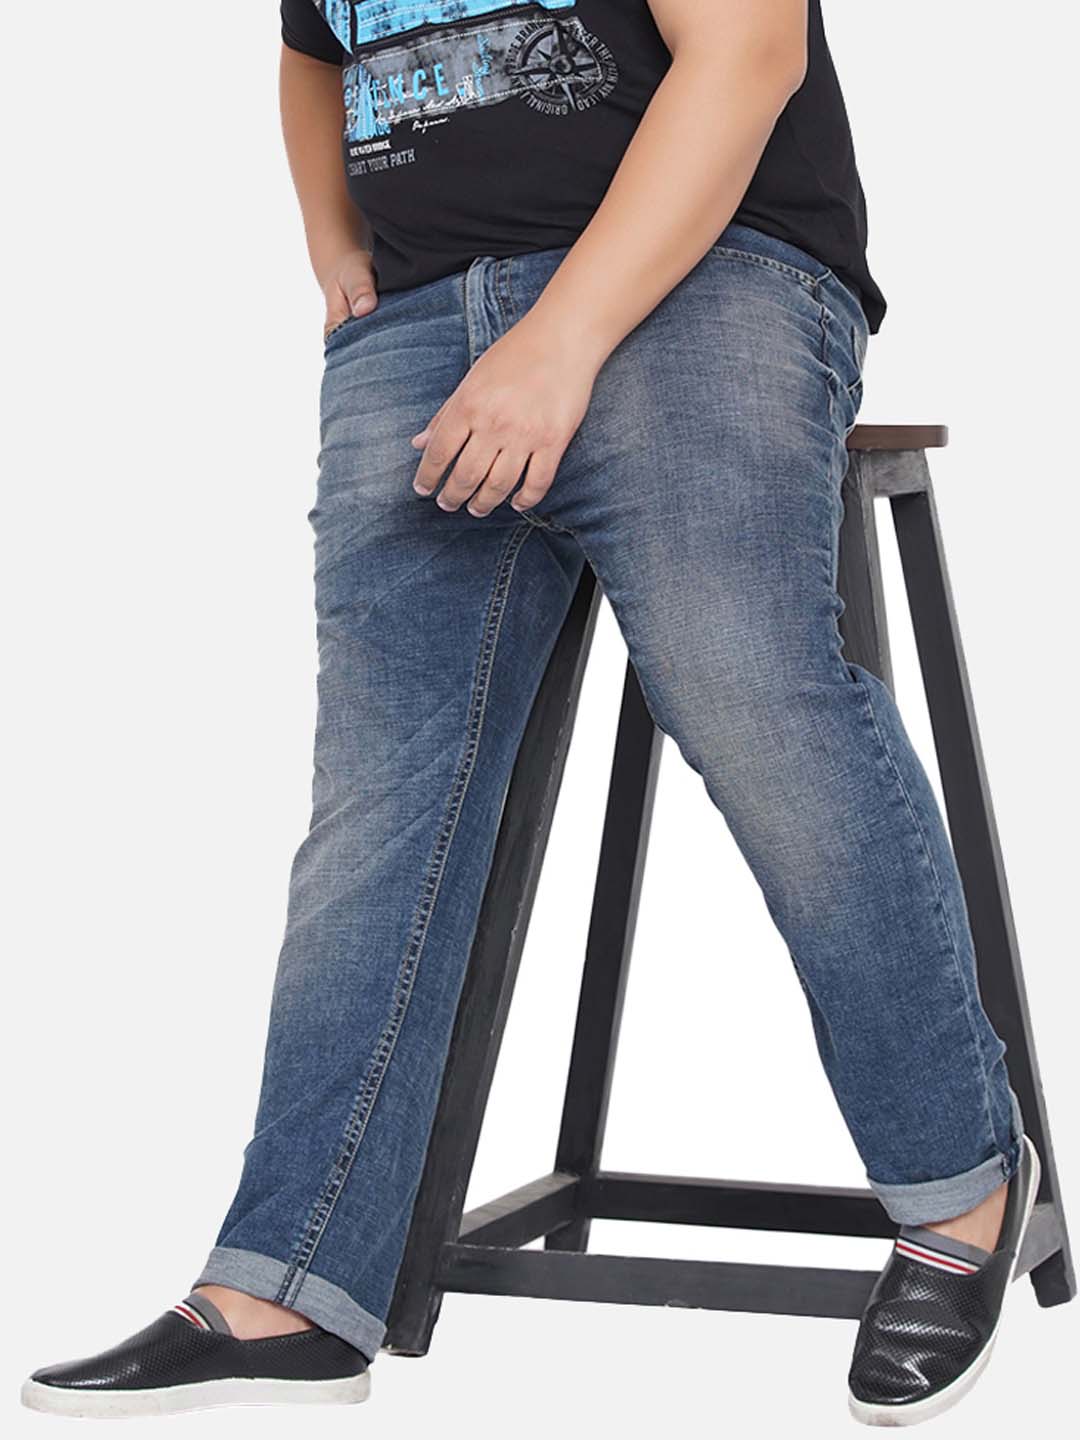 bottomwear/jeans/PJPJ6046/pjpj6046-1.jpg